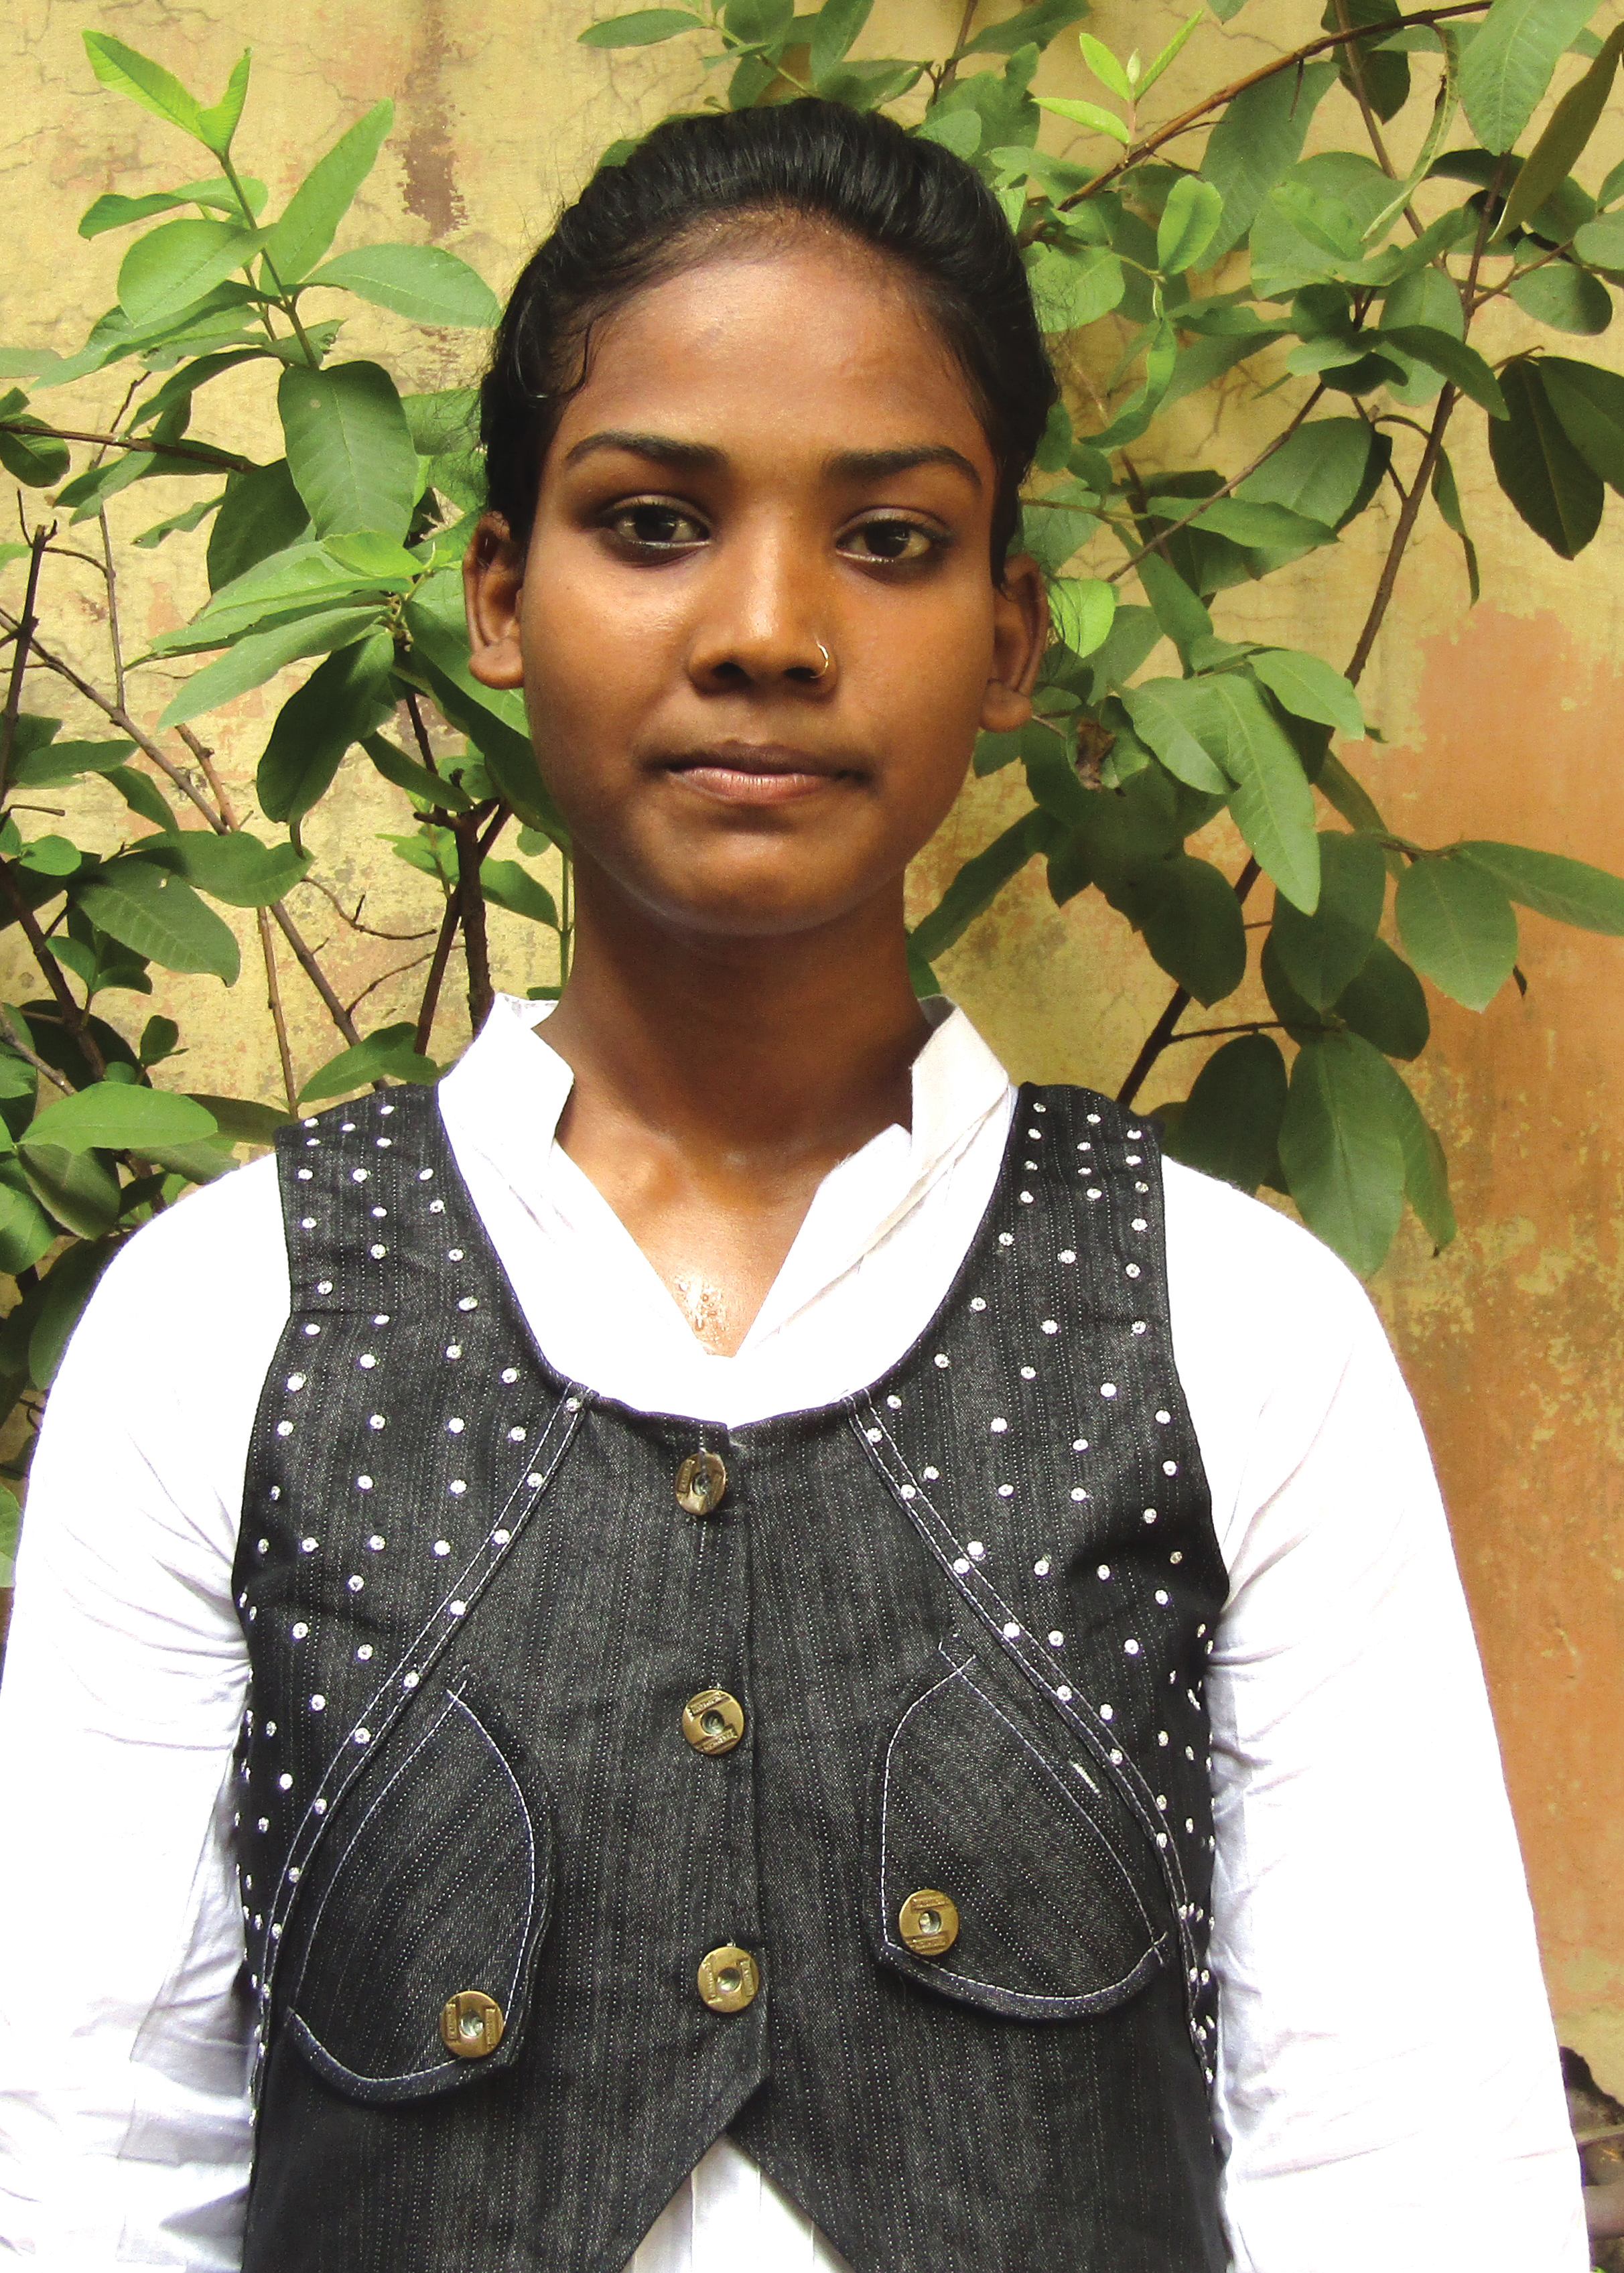 Sponsored girl Anshul in August 2017.